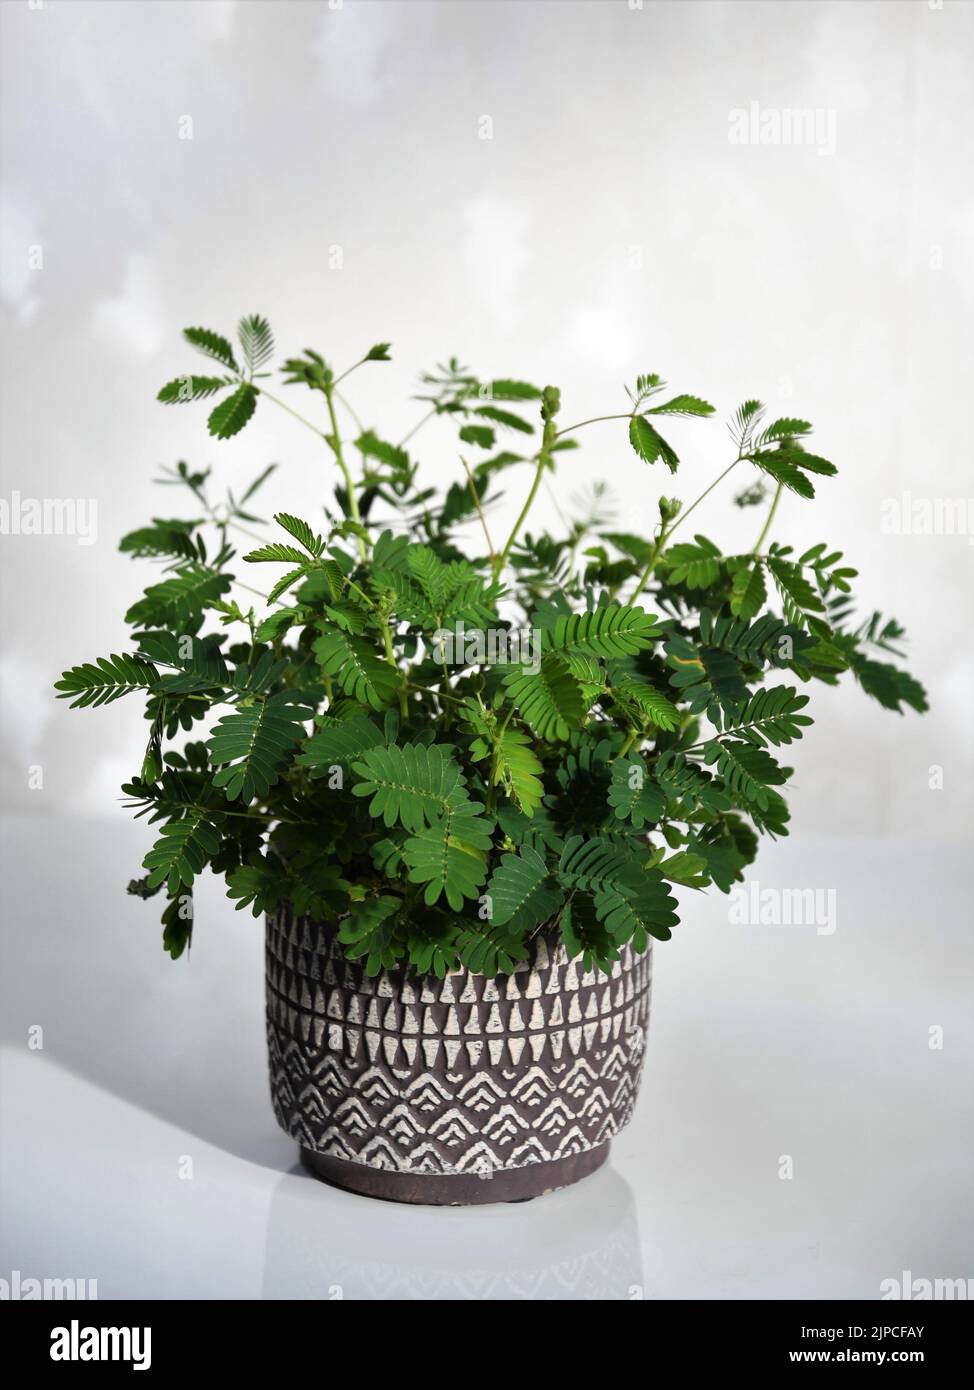 Mimosa pudica, également connue sous le nom de plante sensible, plante endormie, plante d'action, touch-me-not, et plante de shampoings. Plante verte dans un pot violet. Banque D'Images